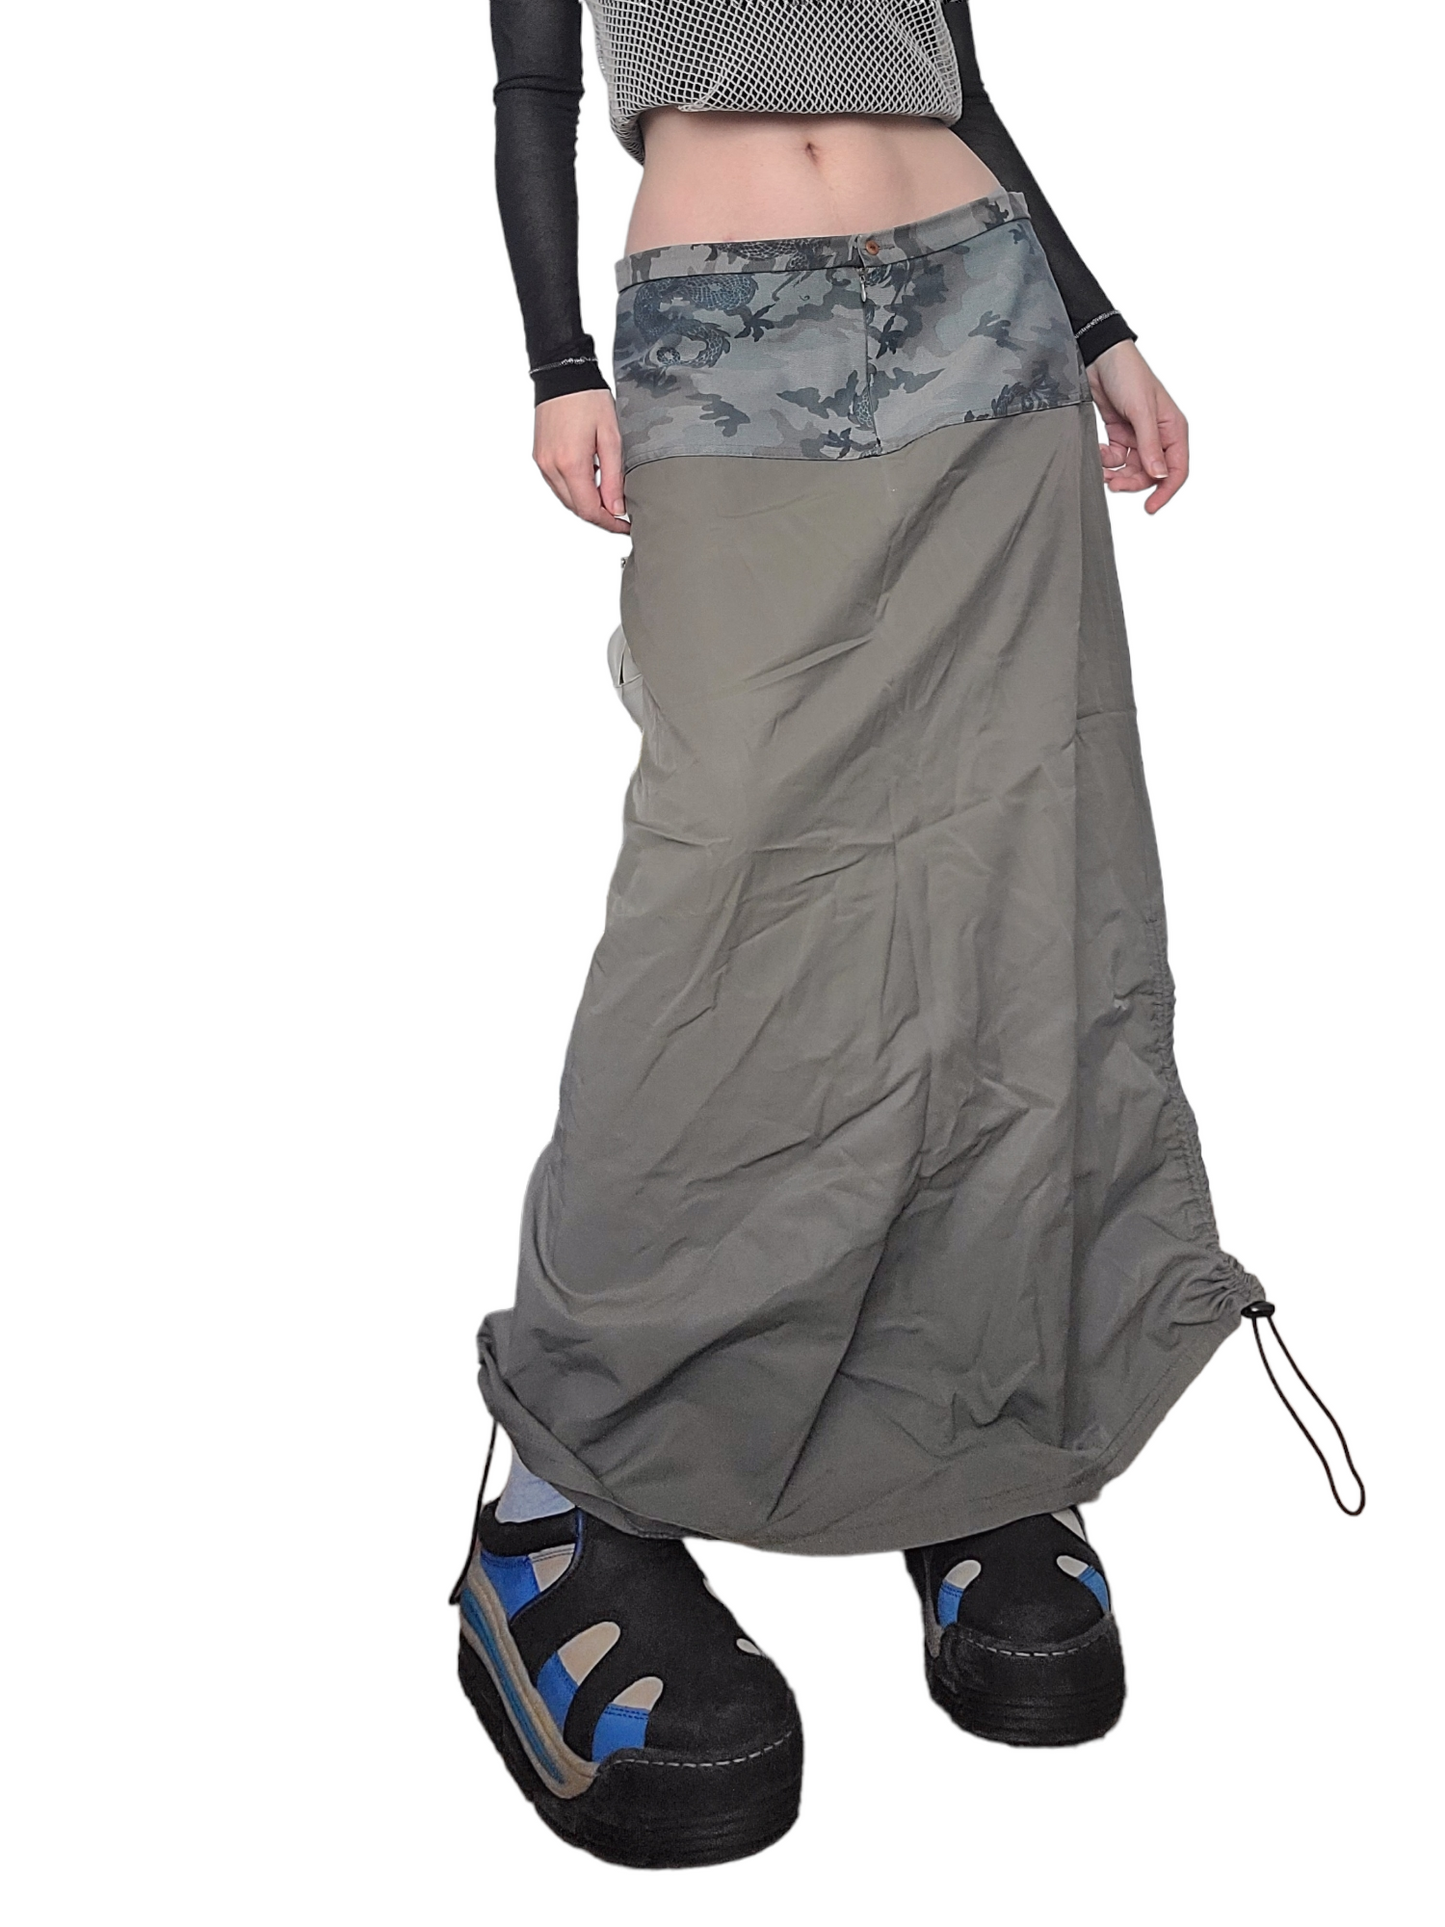 Maxi skirt parachute kaki 90s skater streetwear gorpcore skater made in france paris military